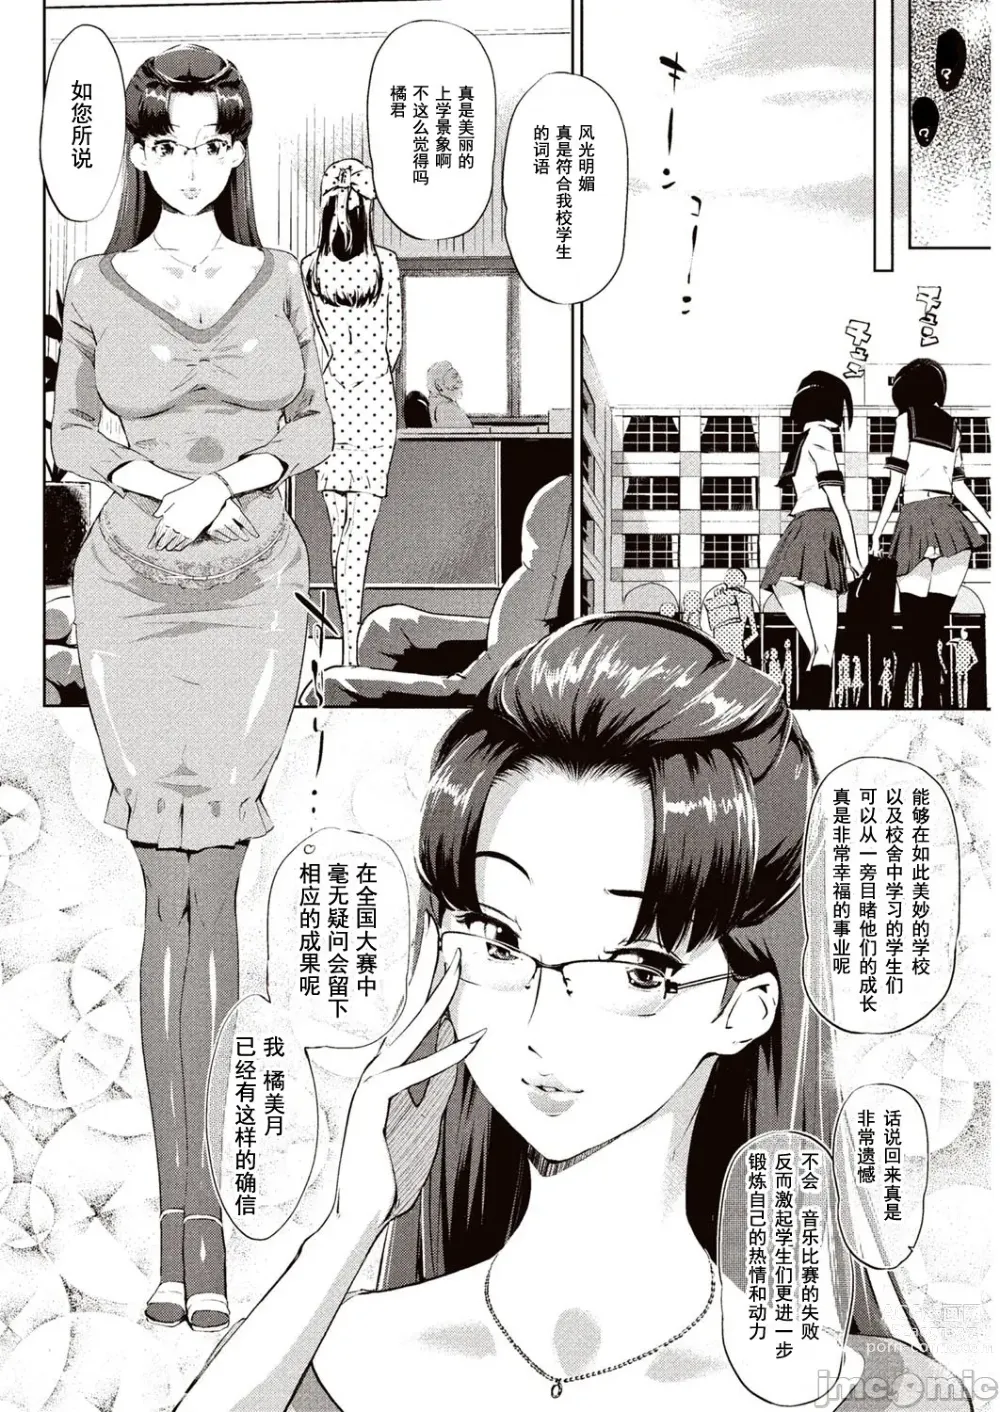 Page 5 of manga 賣作社團的招待券